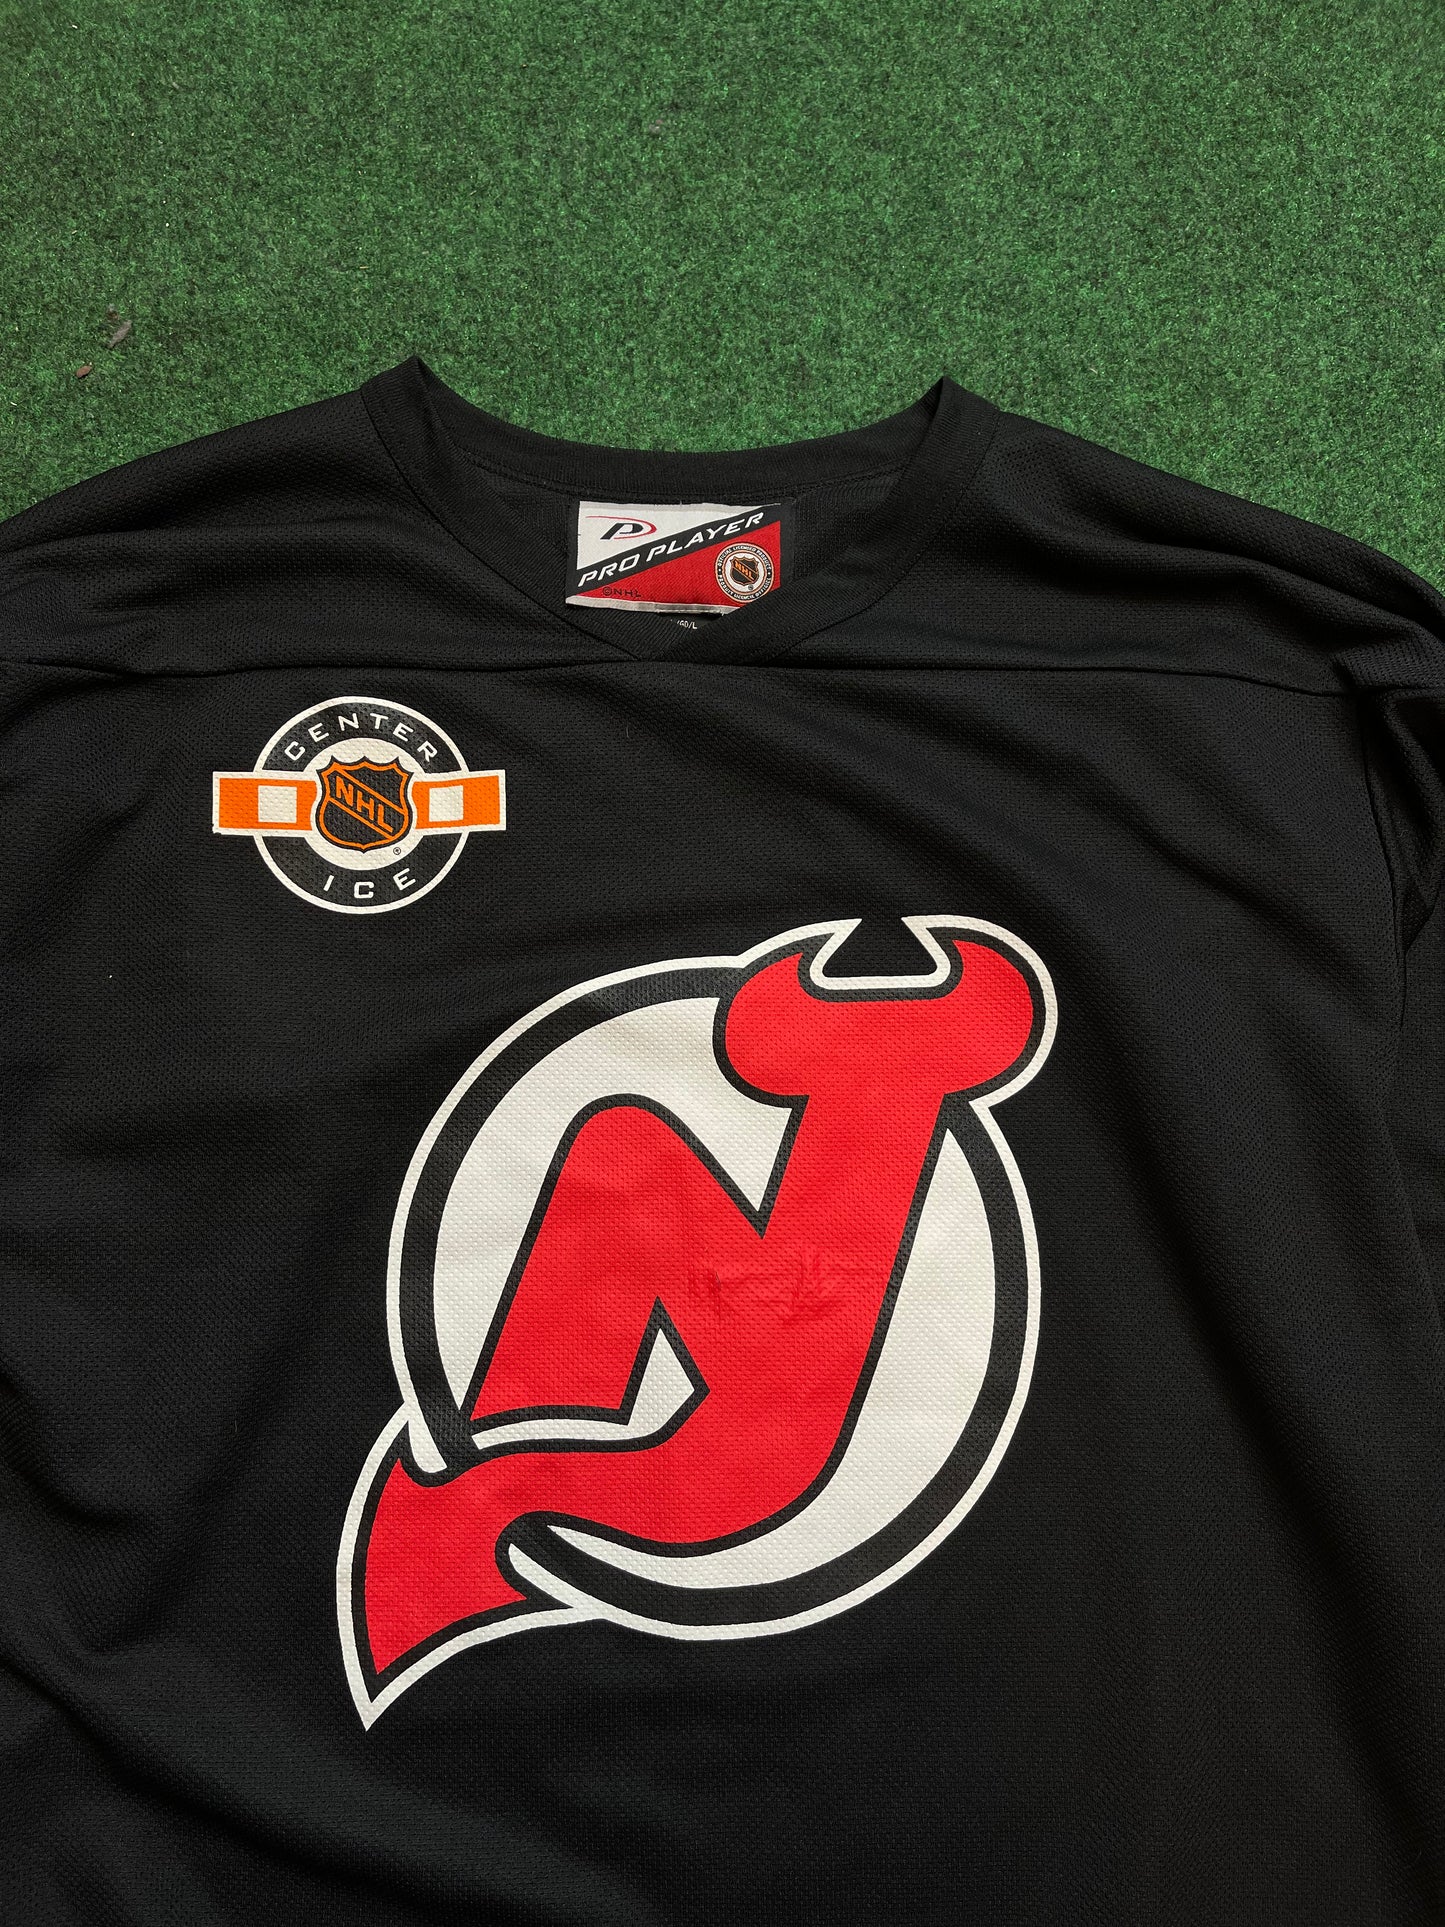 90’s New Jersey Devils Vintage Pro Player NHL Center Ice Hockey Jersey (Large)